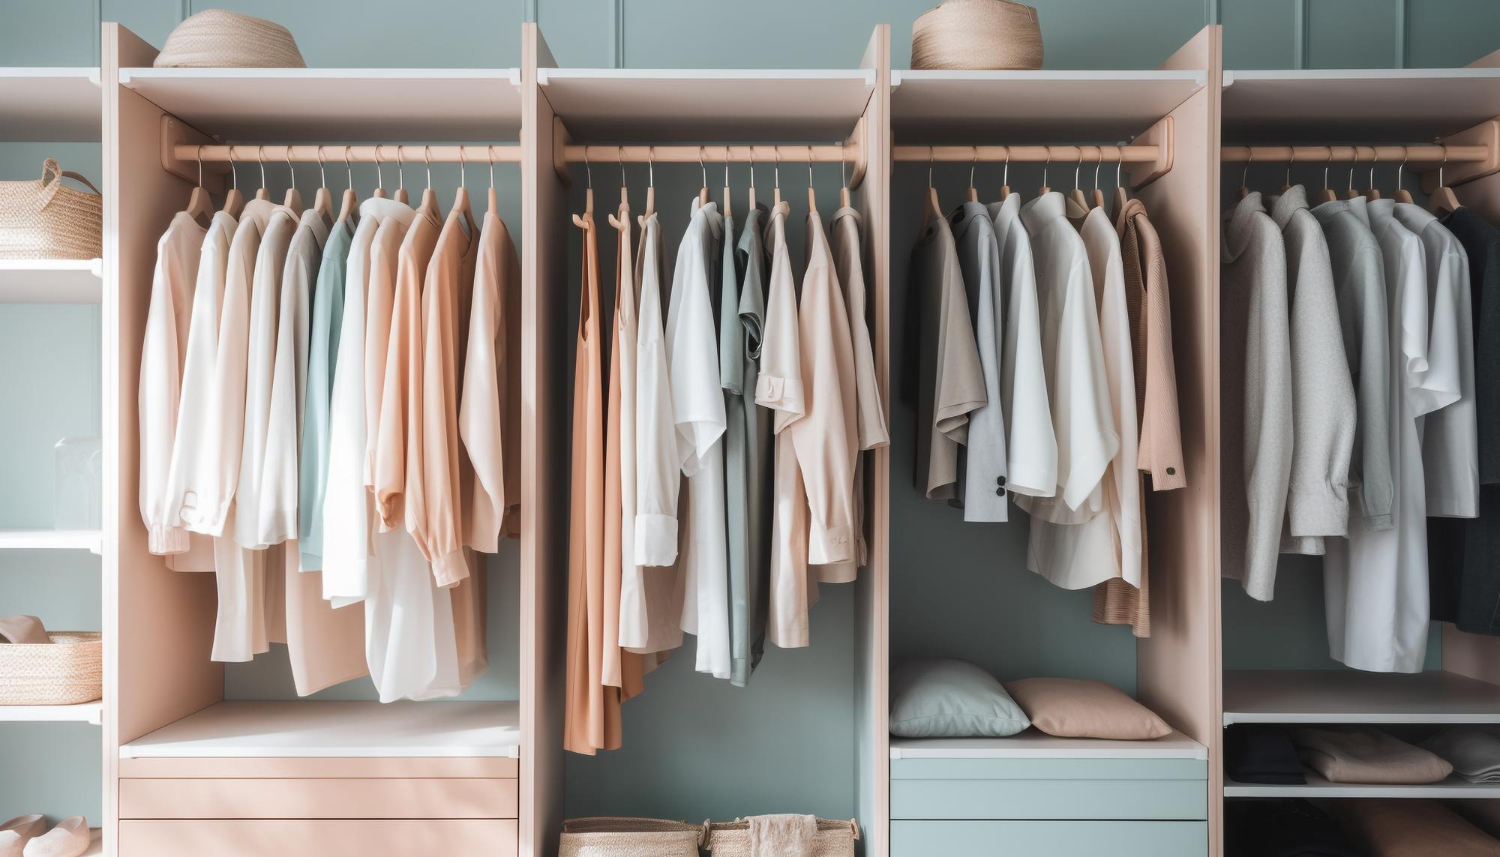 imagem de um armário de roupas organizado